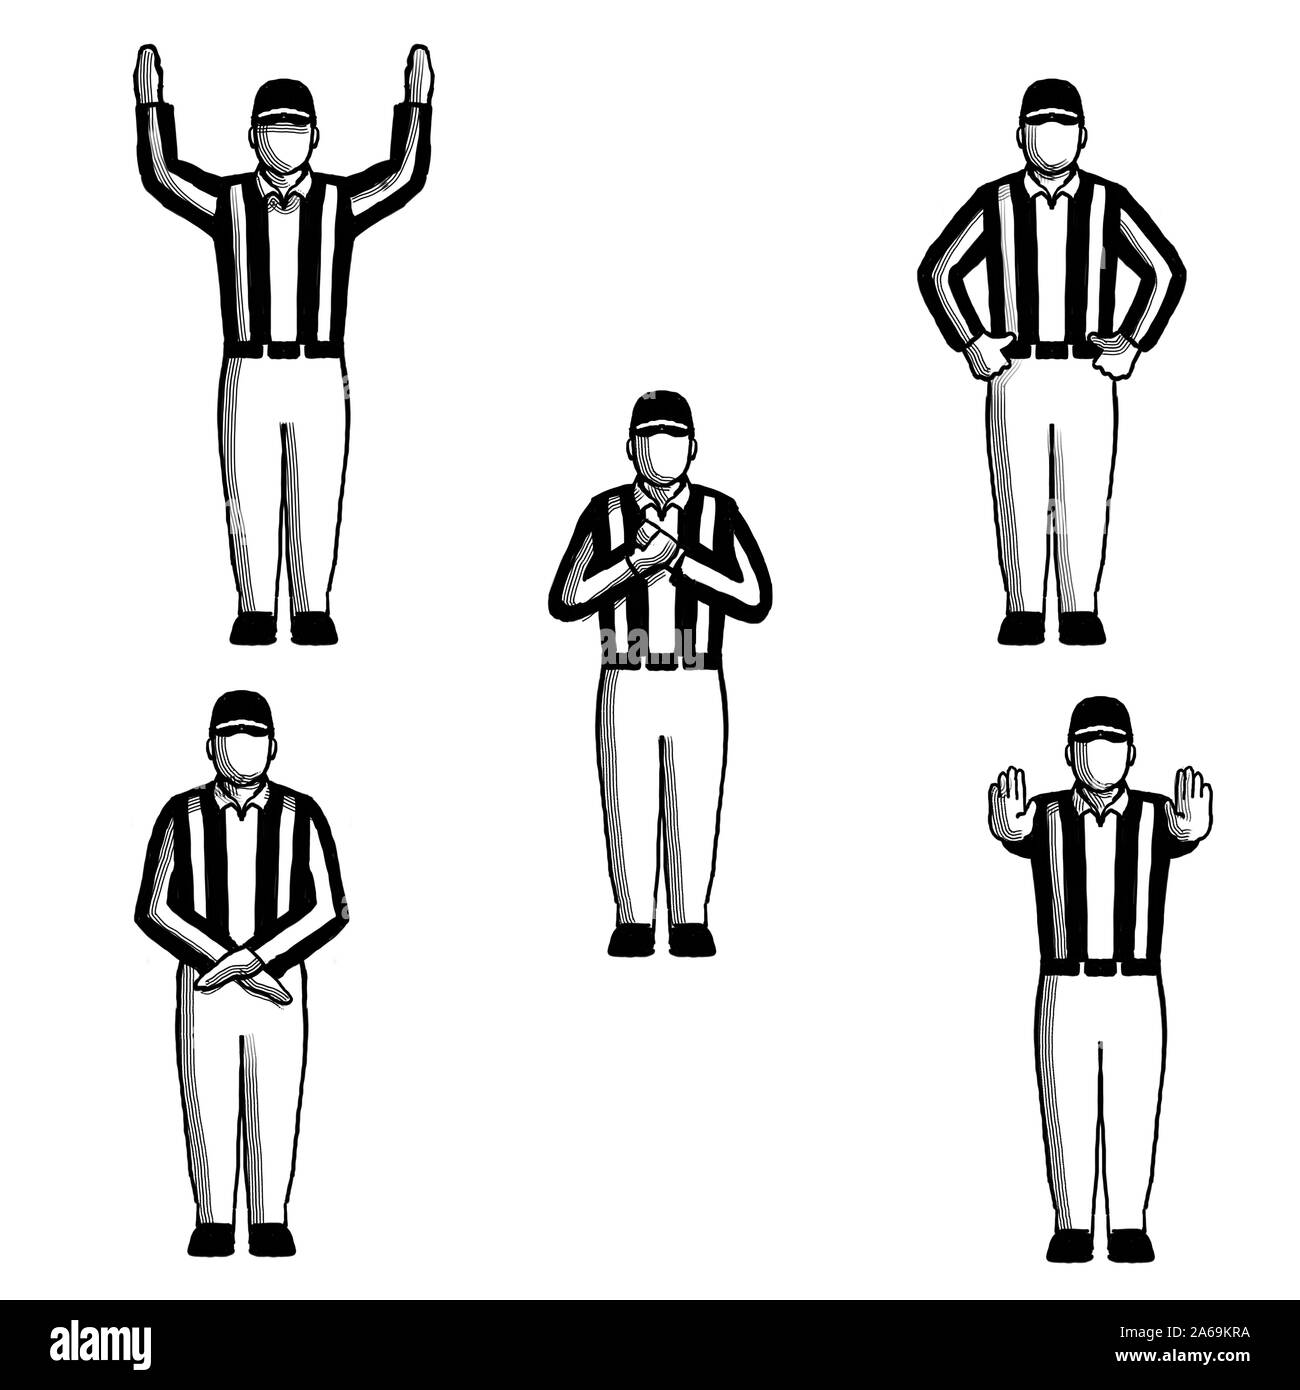 Retro style jeu de dessin illustration montrant un arbitre de football américain ou officiel avec des signaux à main sur fond blac fait isolé Banque D'Images